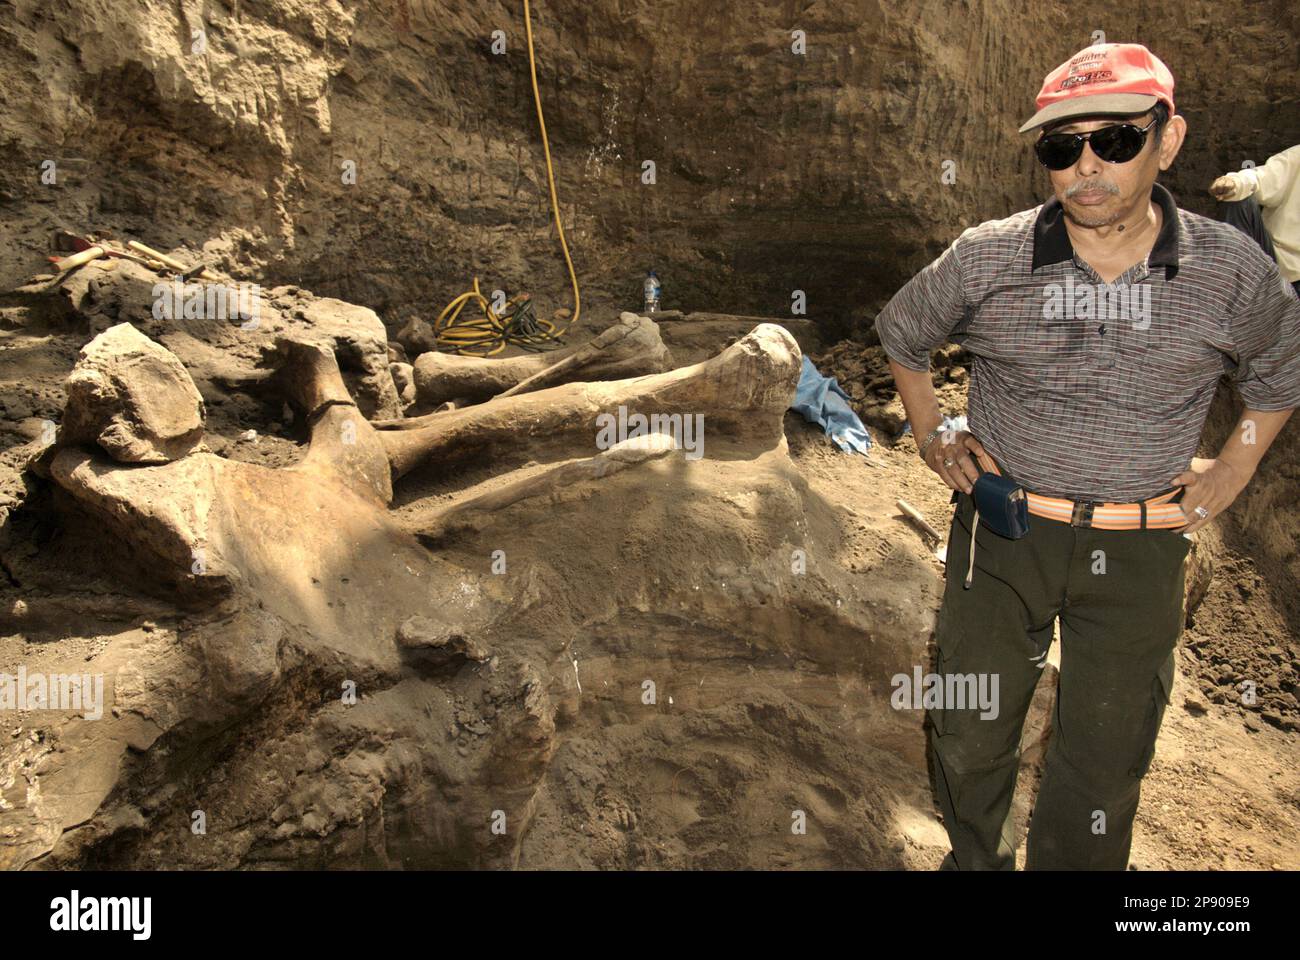 Fachroel Aziz, professeur de recherche en paléontologie des vertébrés, est photographié sur le site d'excavation d'Elephas hysudrindicatus, une espèce d'éléphant disparue qui vit durant l'époque du Pléistocène, plus tard connue sous le nom d'éléphant de Blora, à Sunggun, Mendalem, Kradenan, Blora, Central Java, Indonésie. Au cours des fouilles, une équipe de scientifiques de la recherche sur les vertébrés (Agence géologique, Ministère indonésien de l'énergie et des ressources minérales), dirigée par les paléontologues Iwan Kurniawan et Fachroel Aziz, a découvert les os de l'espèce presque entièrement (environ 90 pour cent) qui leur permettraient plus tard de construire. Banque D'Images